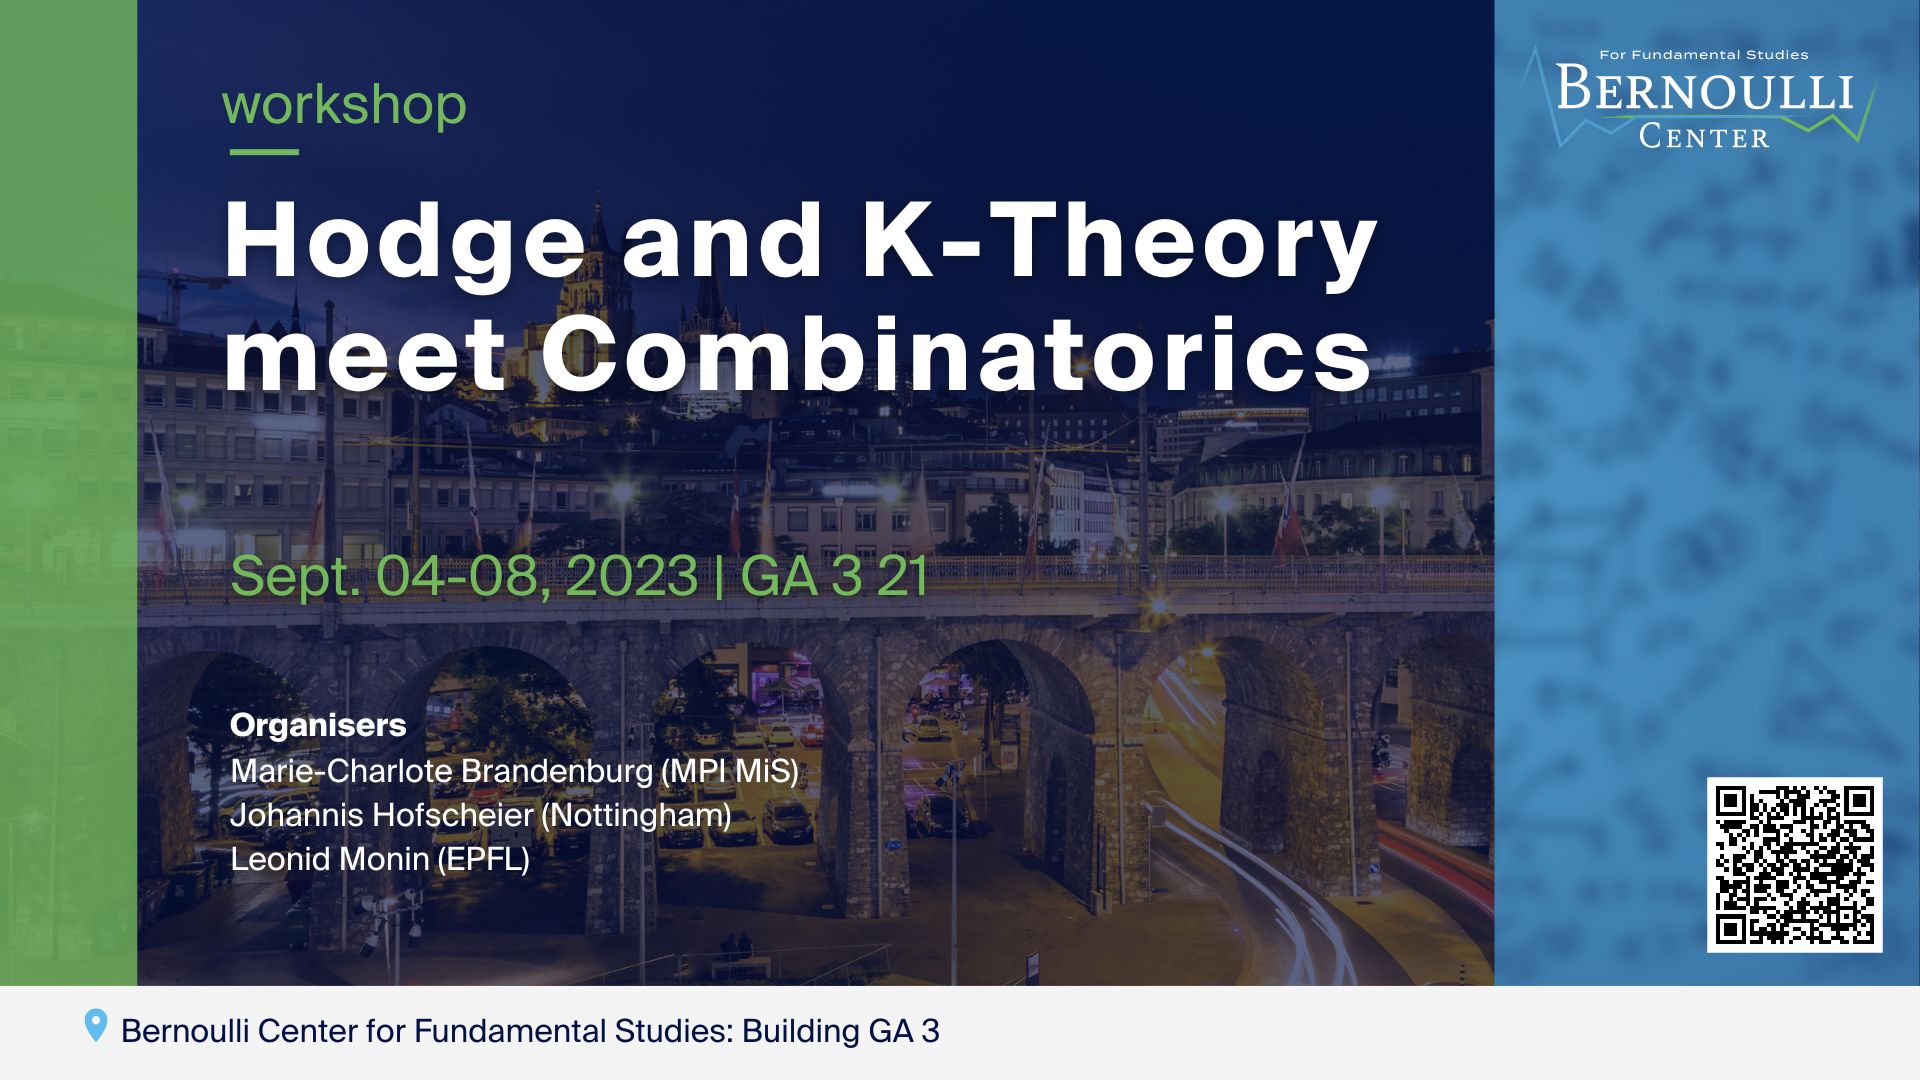 Hodge and K-Theory meet Combinatorics